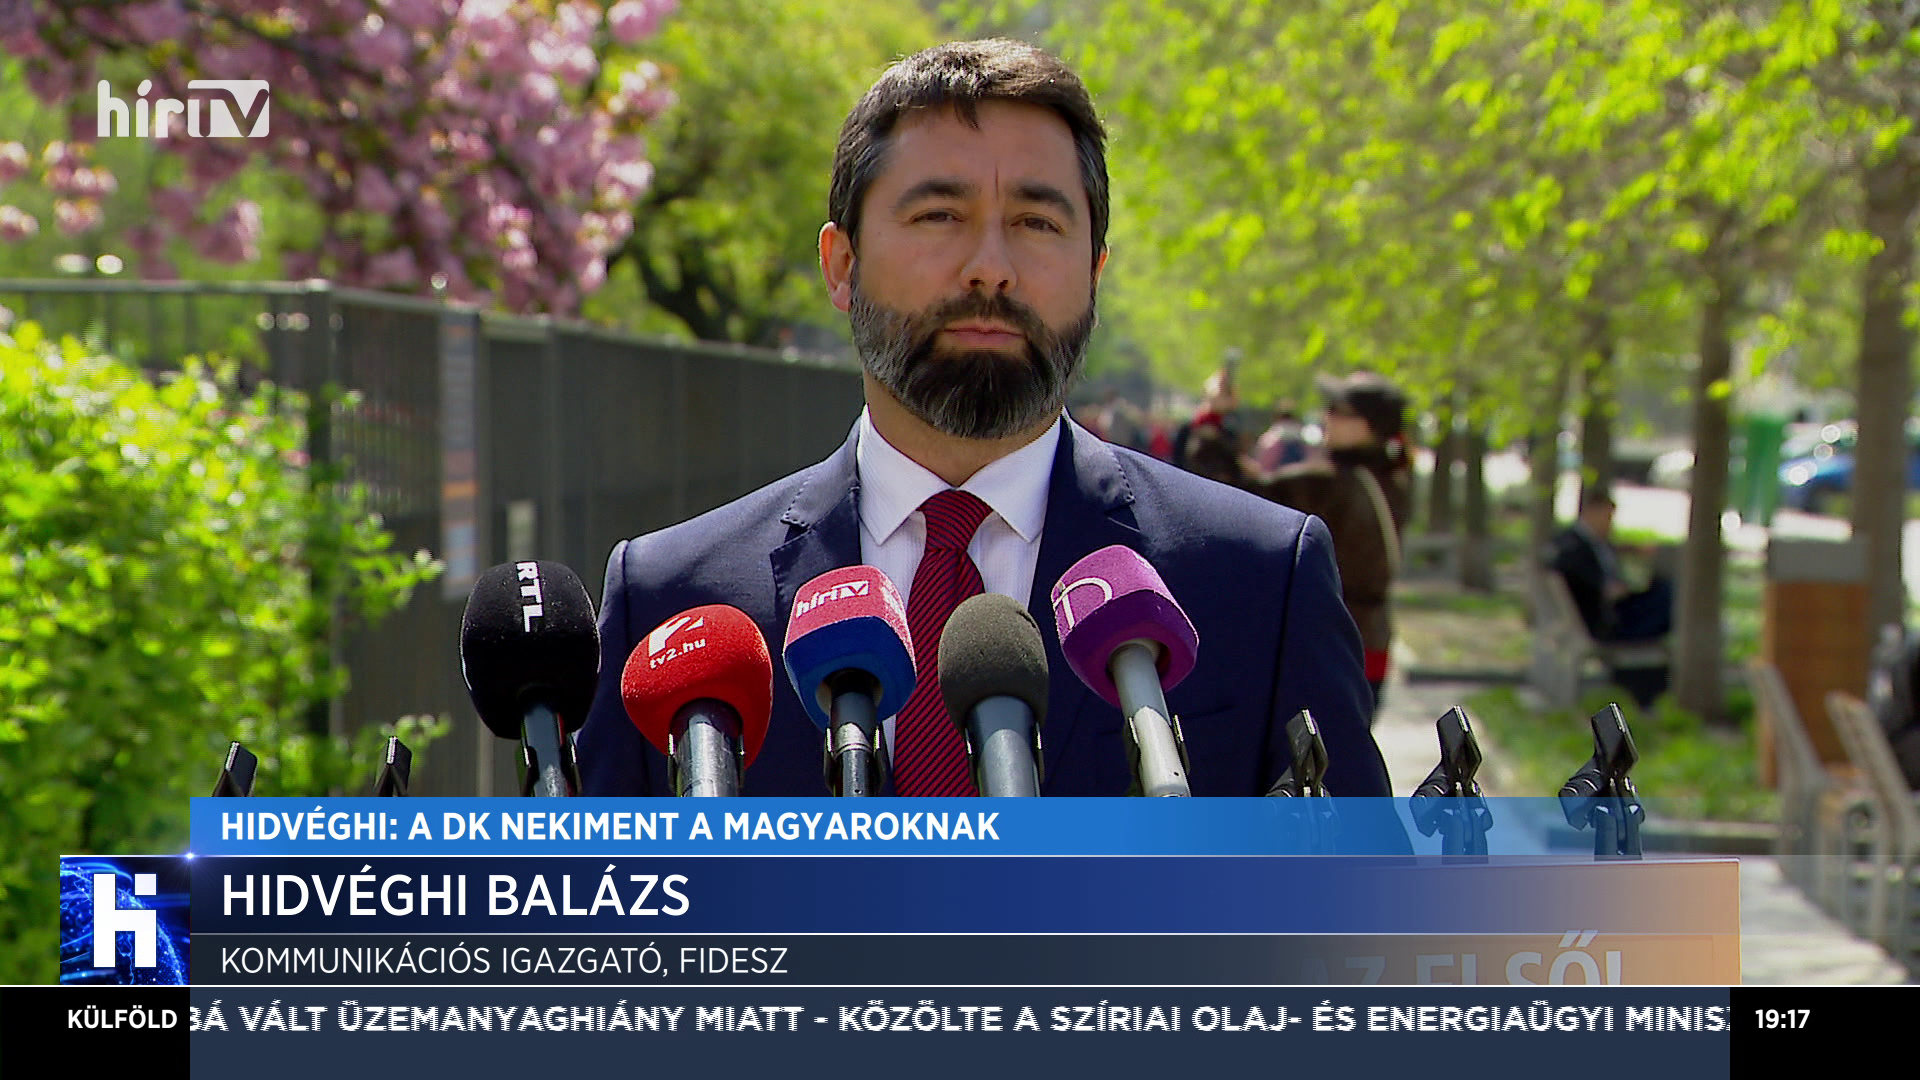 Hidvéghi Balázs: A DK nekiment a magyaroknak